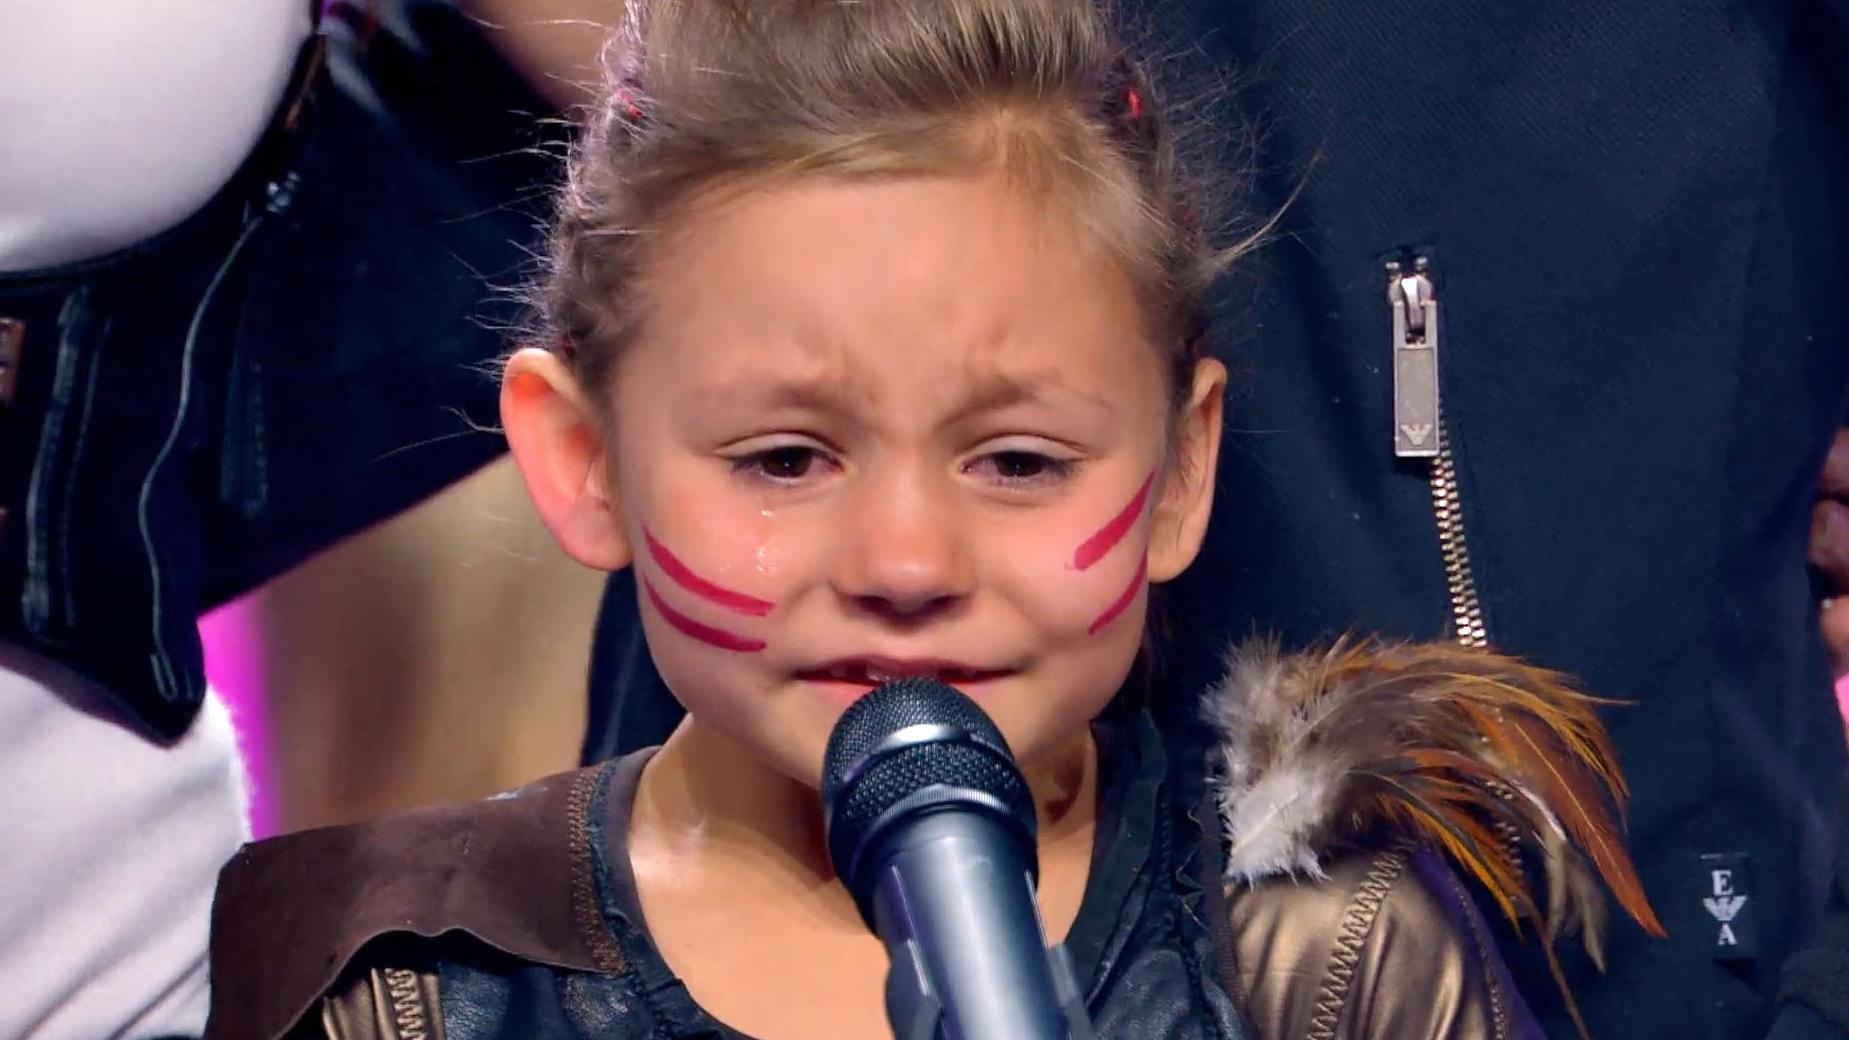 Nach ihrem Supertalent-Auftritt weint die kleine Liliya vor Glück